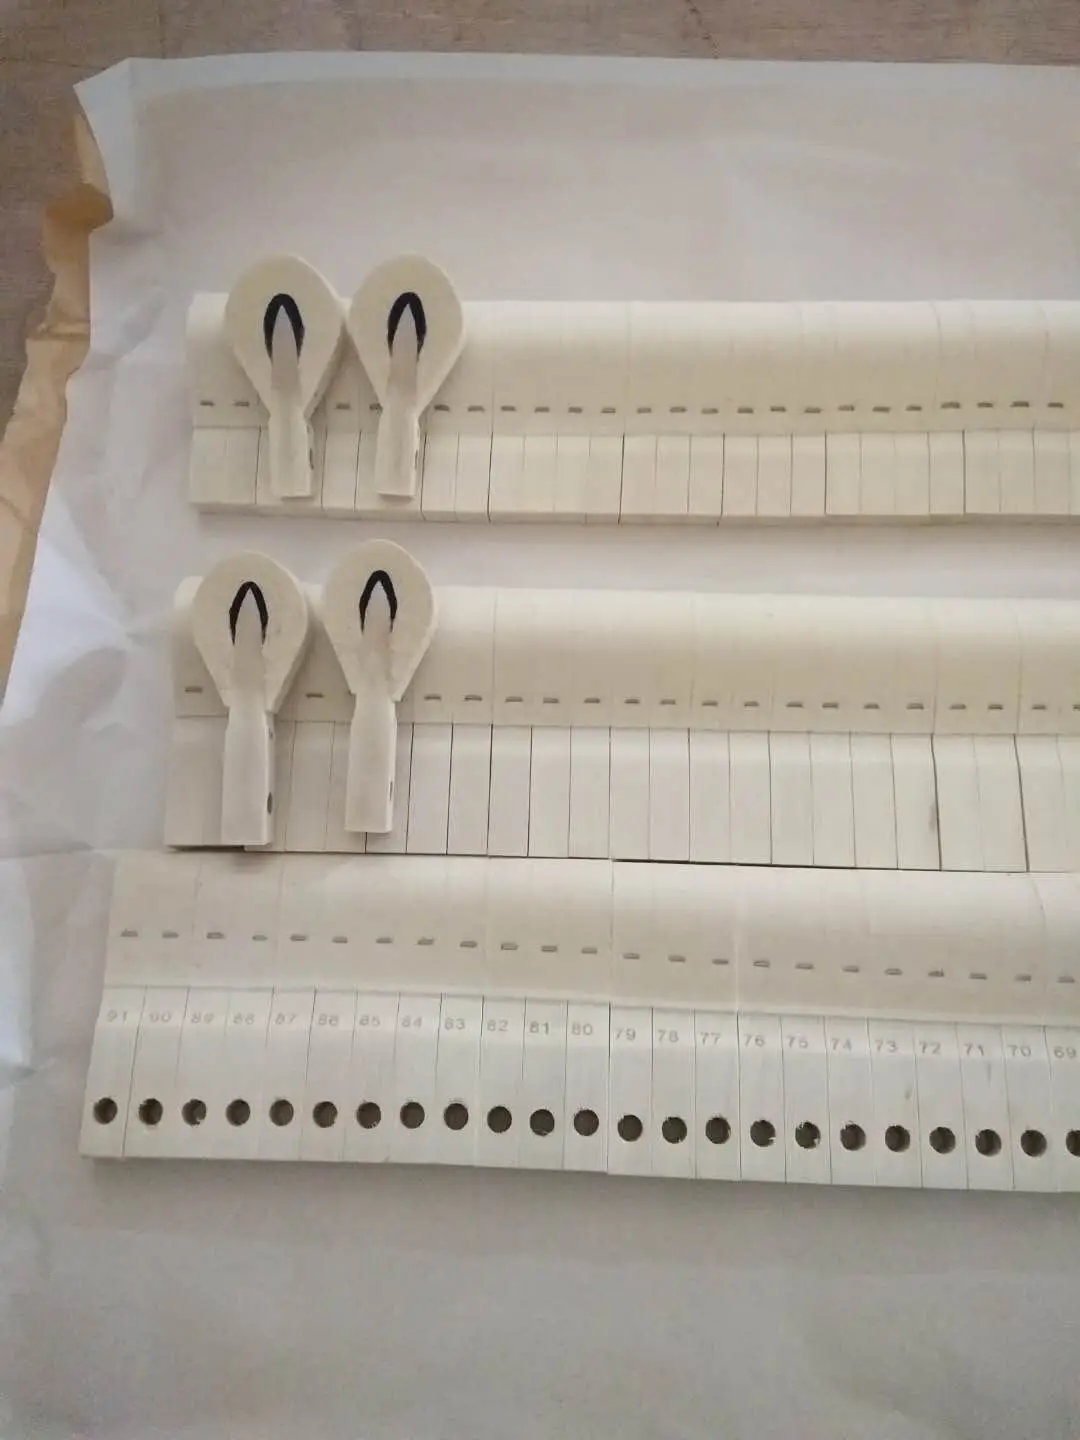 marteaux-de-piano-droits-importes-allemands-accessoires-de-piano-japonais-intermediaire-bois-blanc-coeur-bleu-1-jeu